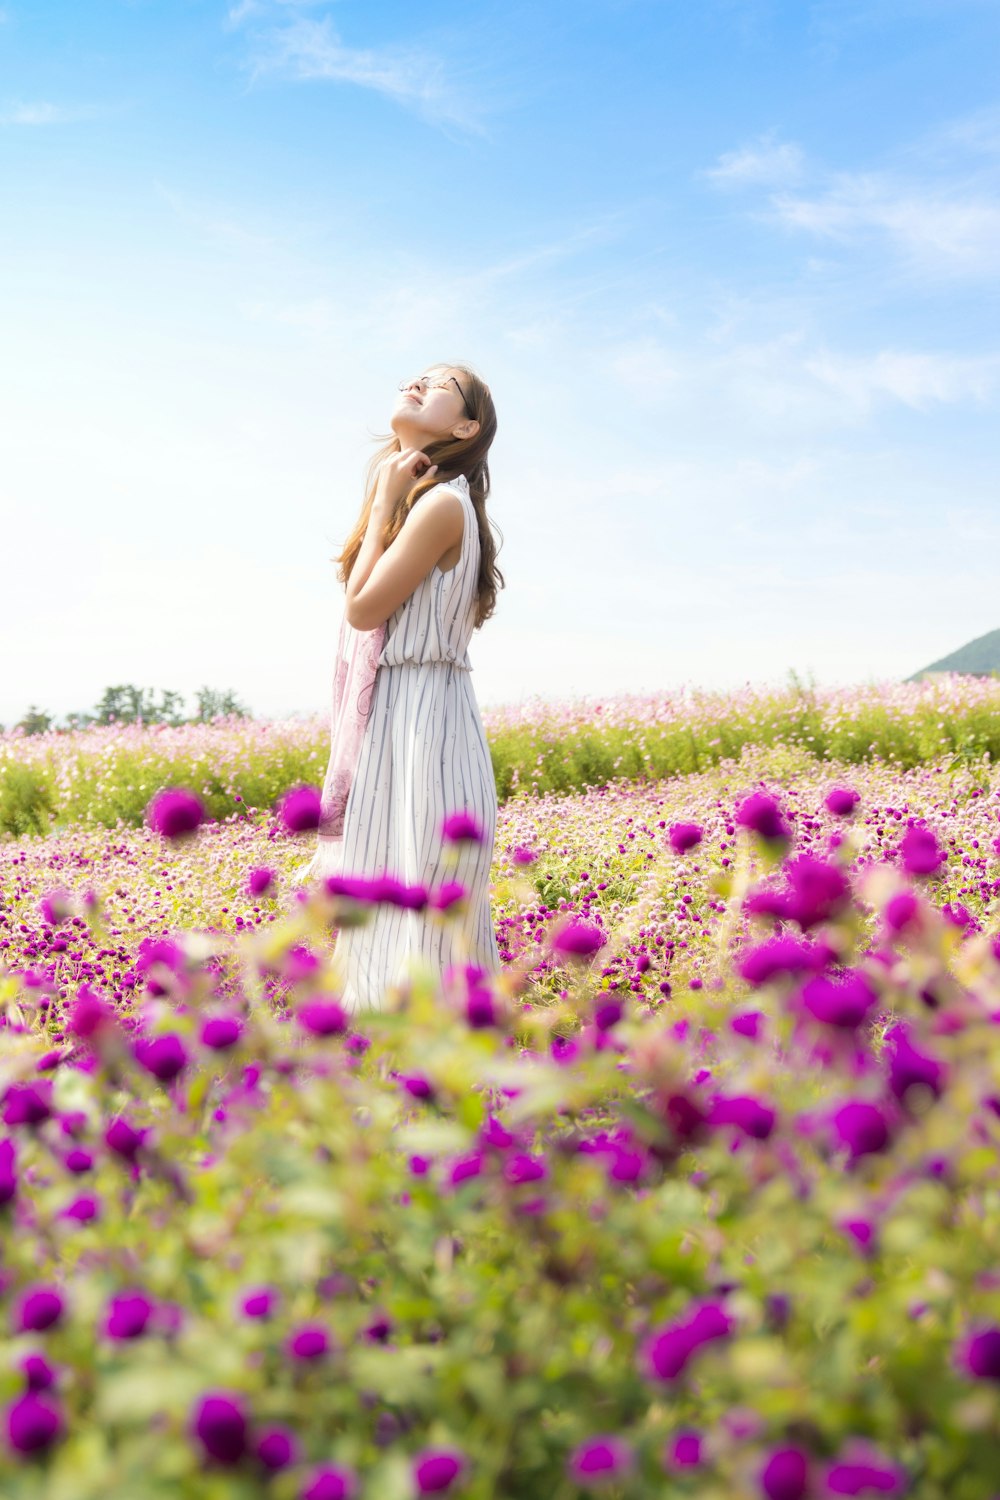 mujer con vestido sin mangas a rayas blancas y grises que huele el aire de pie en el campo de flores rosadas durante el día